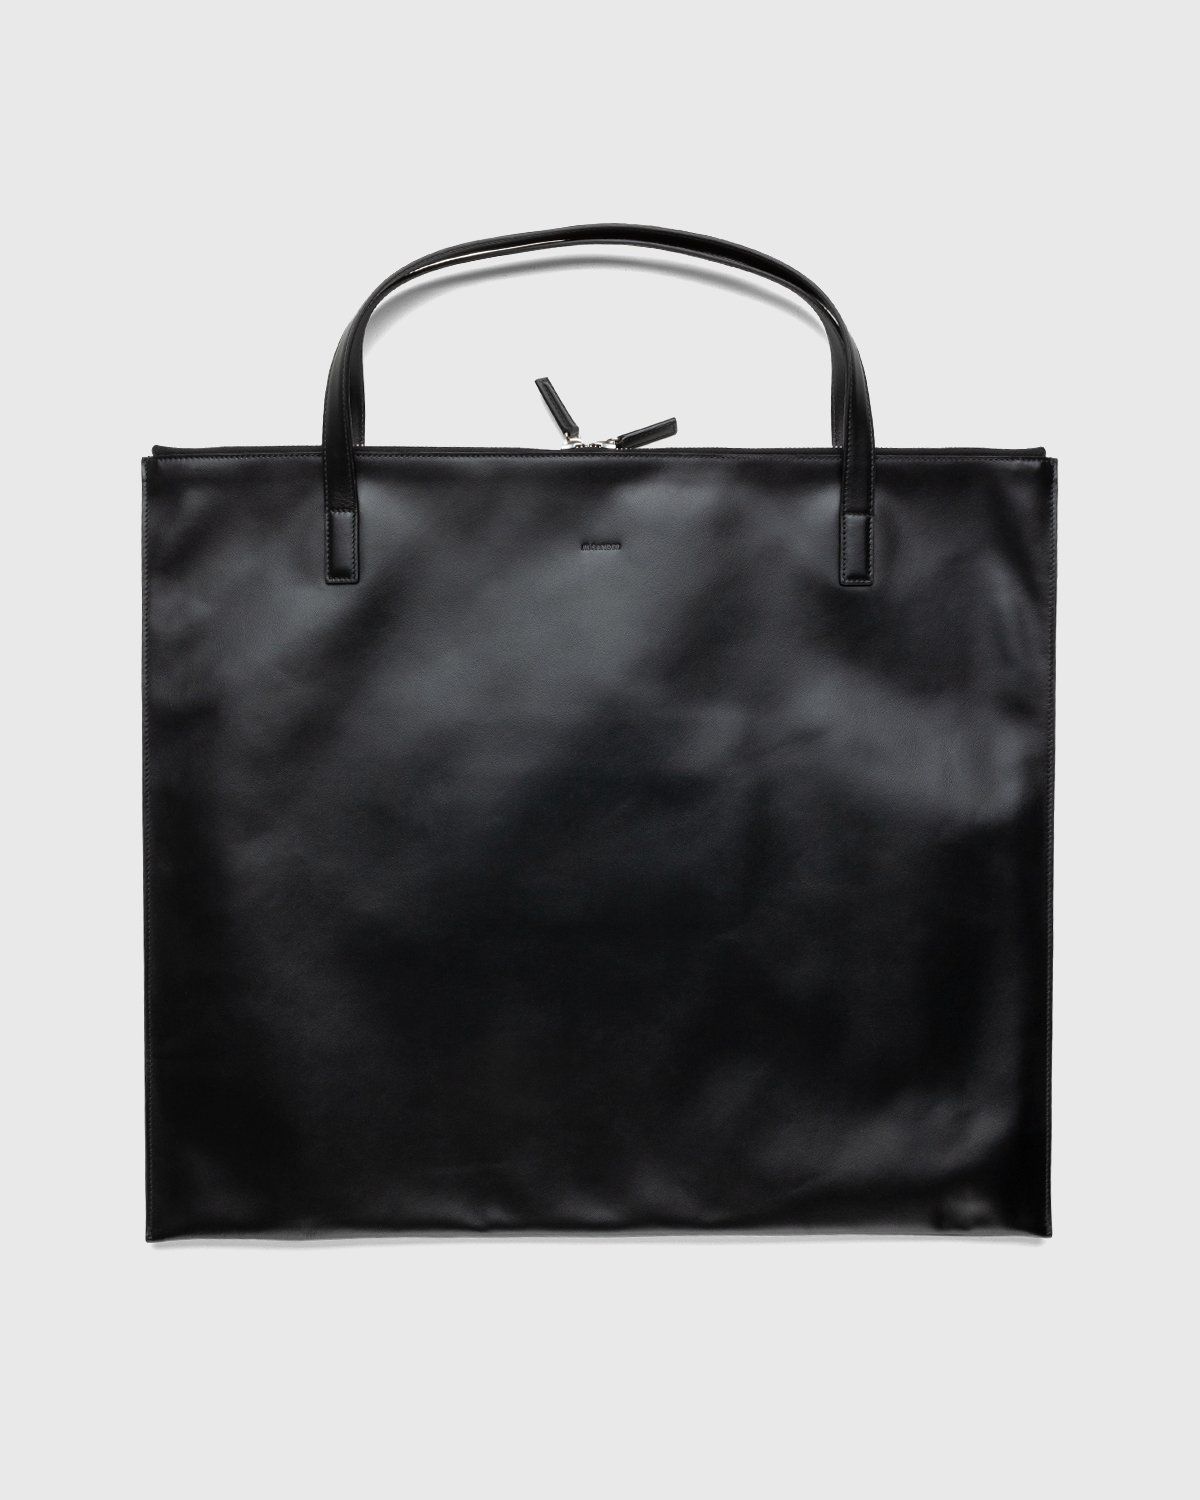 Jil Sander – Zip Tote Medium Black - Tote Bags - Black - Image 1